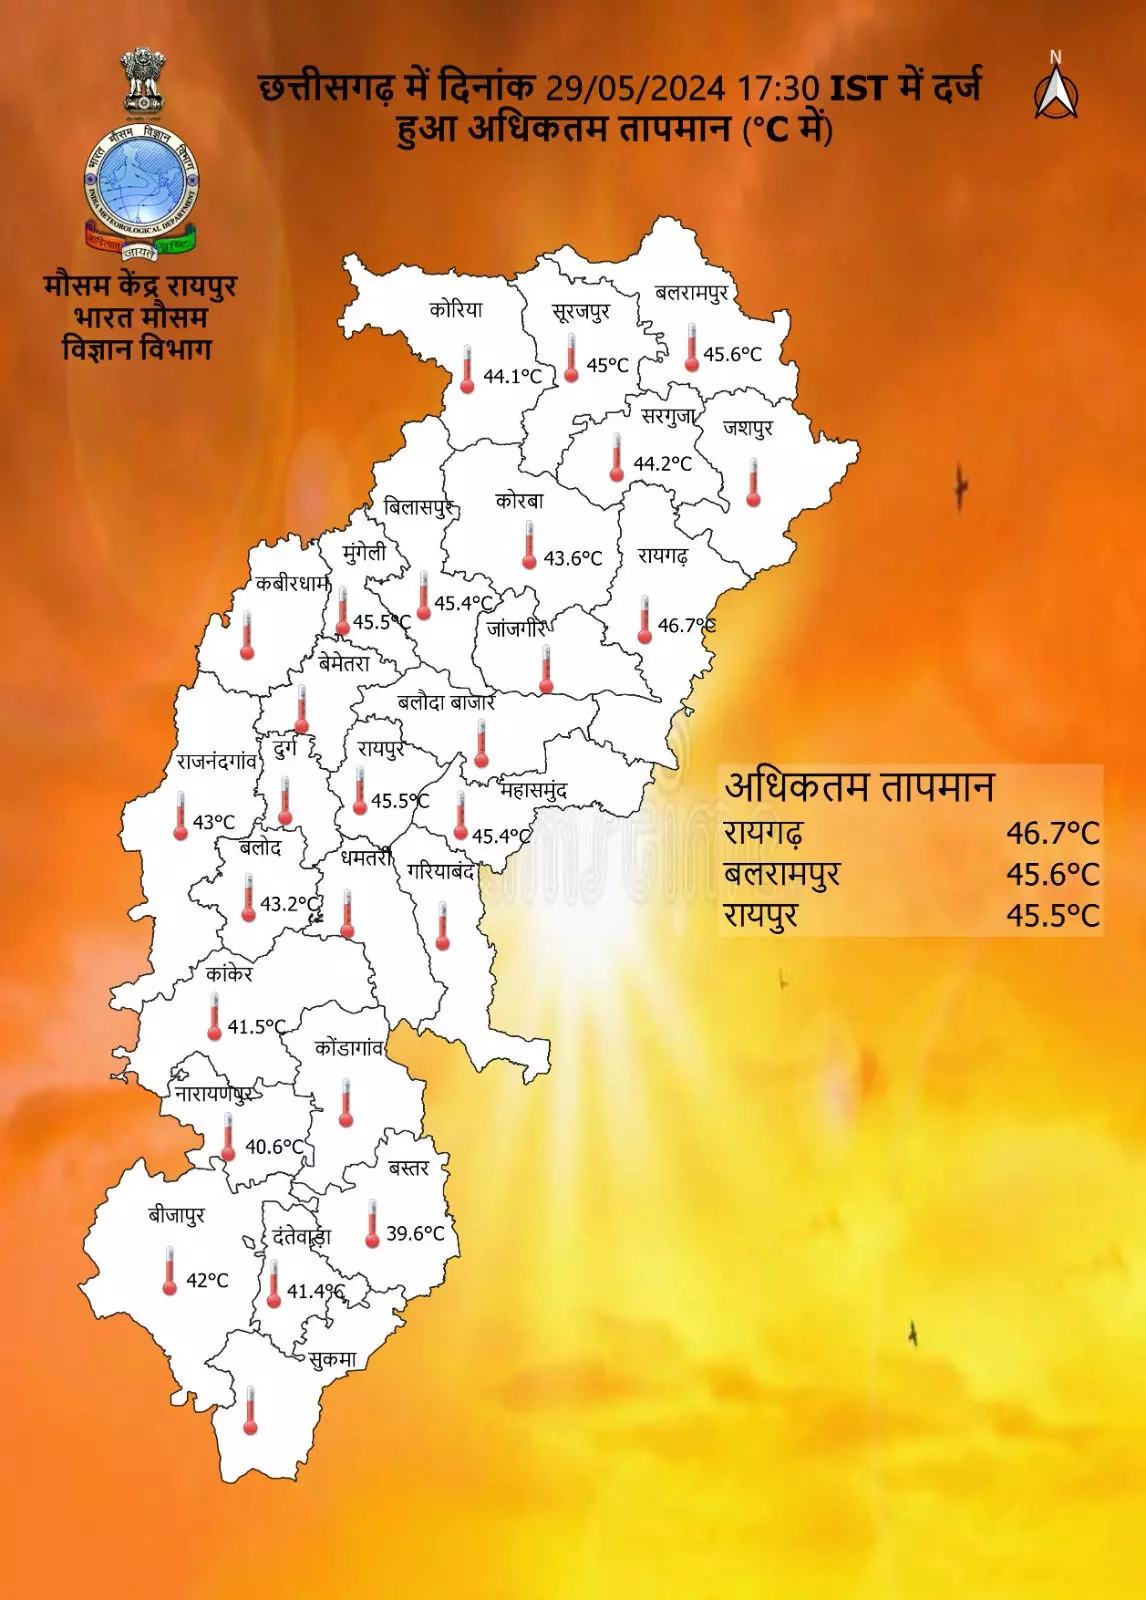 सबसे ज्यादा गर्म रहा रायगढ़, आज के लिए छत्तीसगढ़ में हिटवेव का अलर्ट